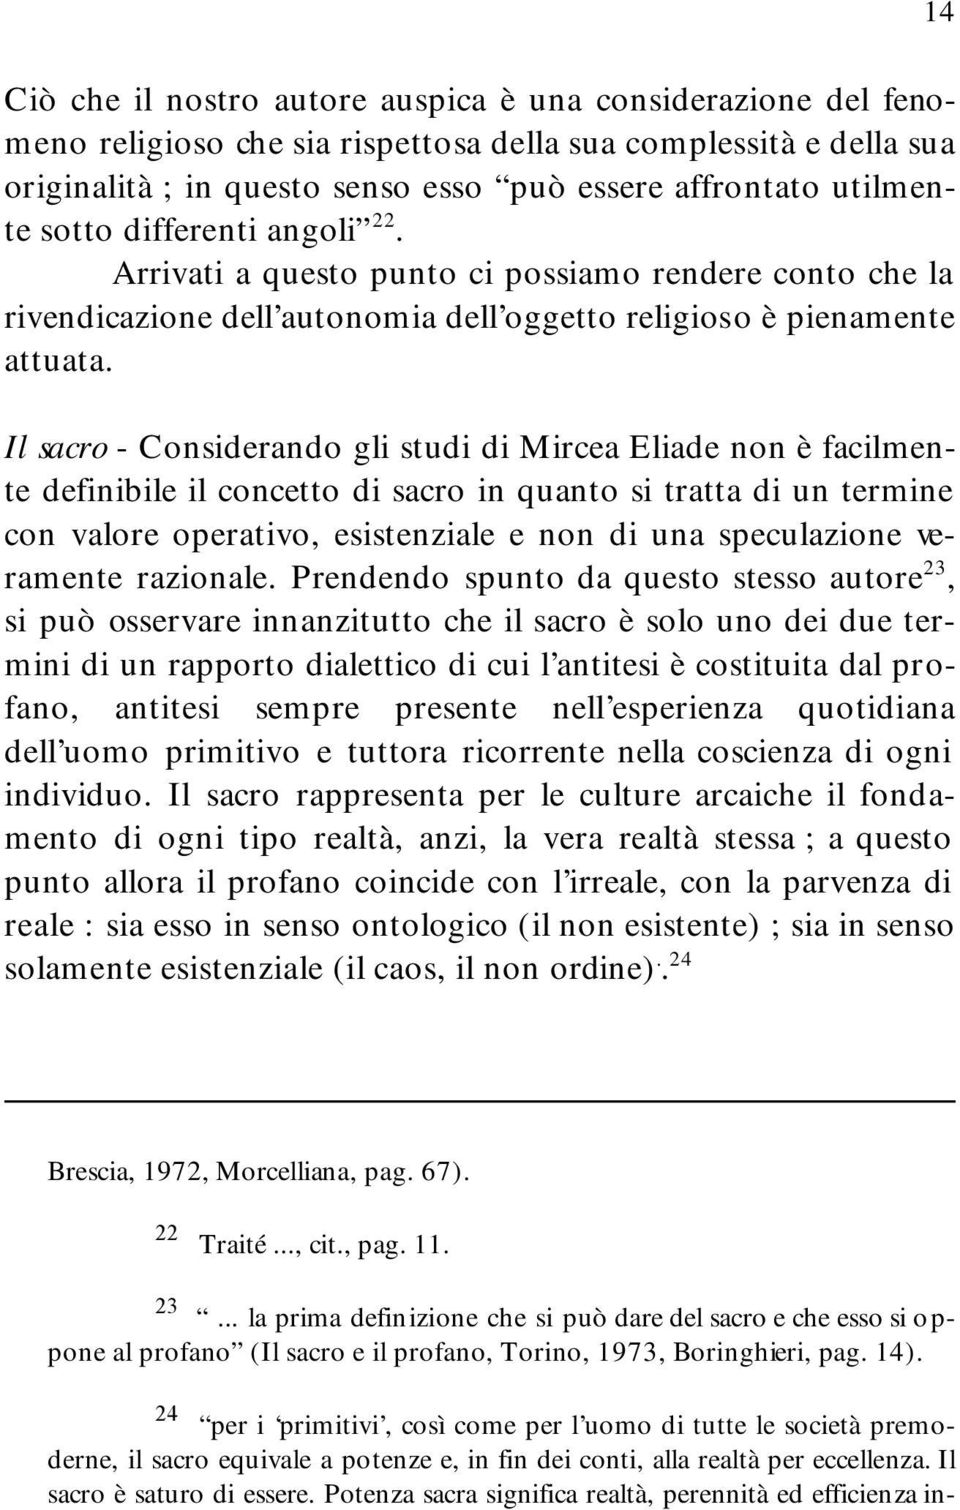 Il sacro - Considerando gli studi di Mircea Eliade non è facilmente definibile il concetto di sacro in quanto si tratta di un termine con valore operativo, esistenziale e non di una speculazione